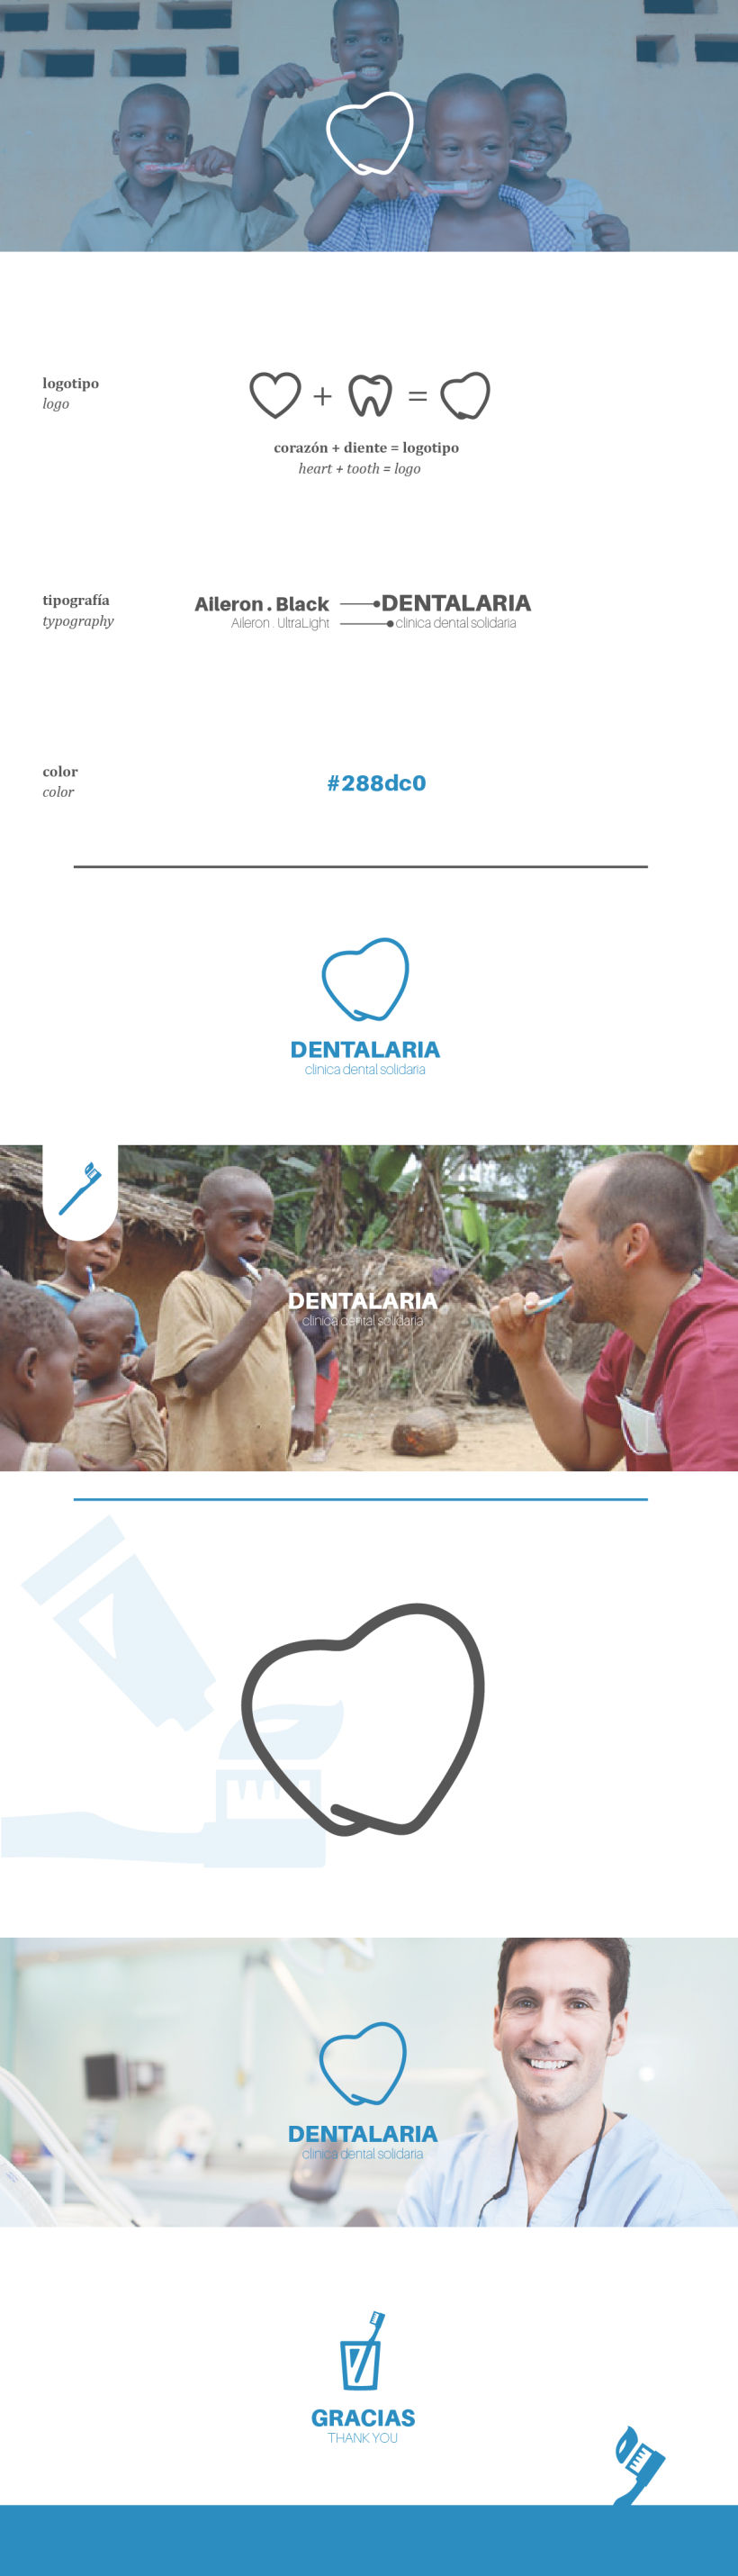 DENTALARIA. dentistas solidarios -1